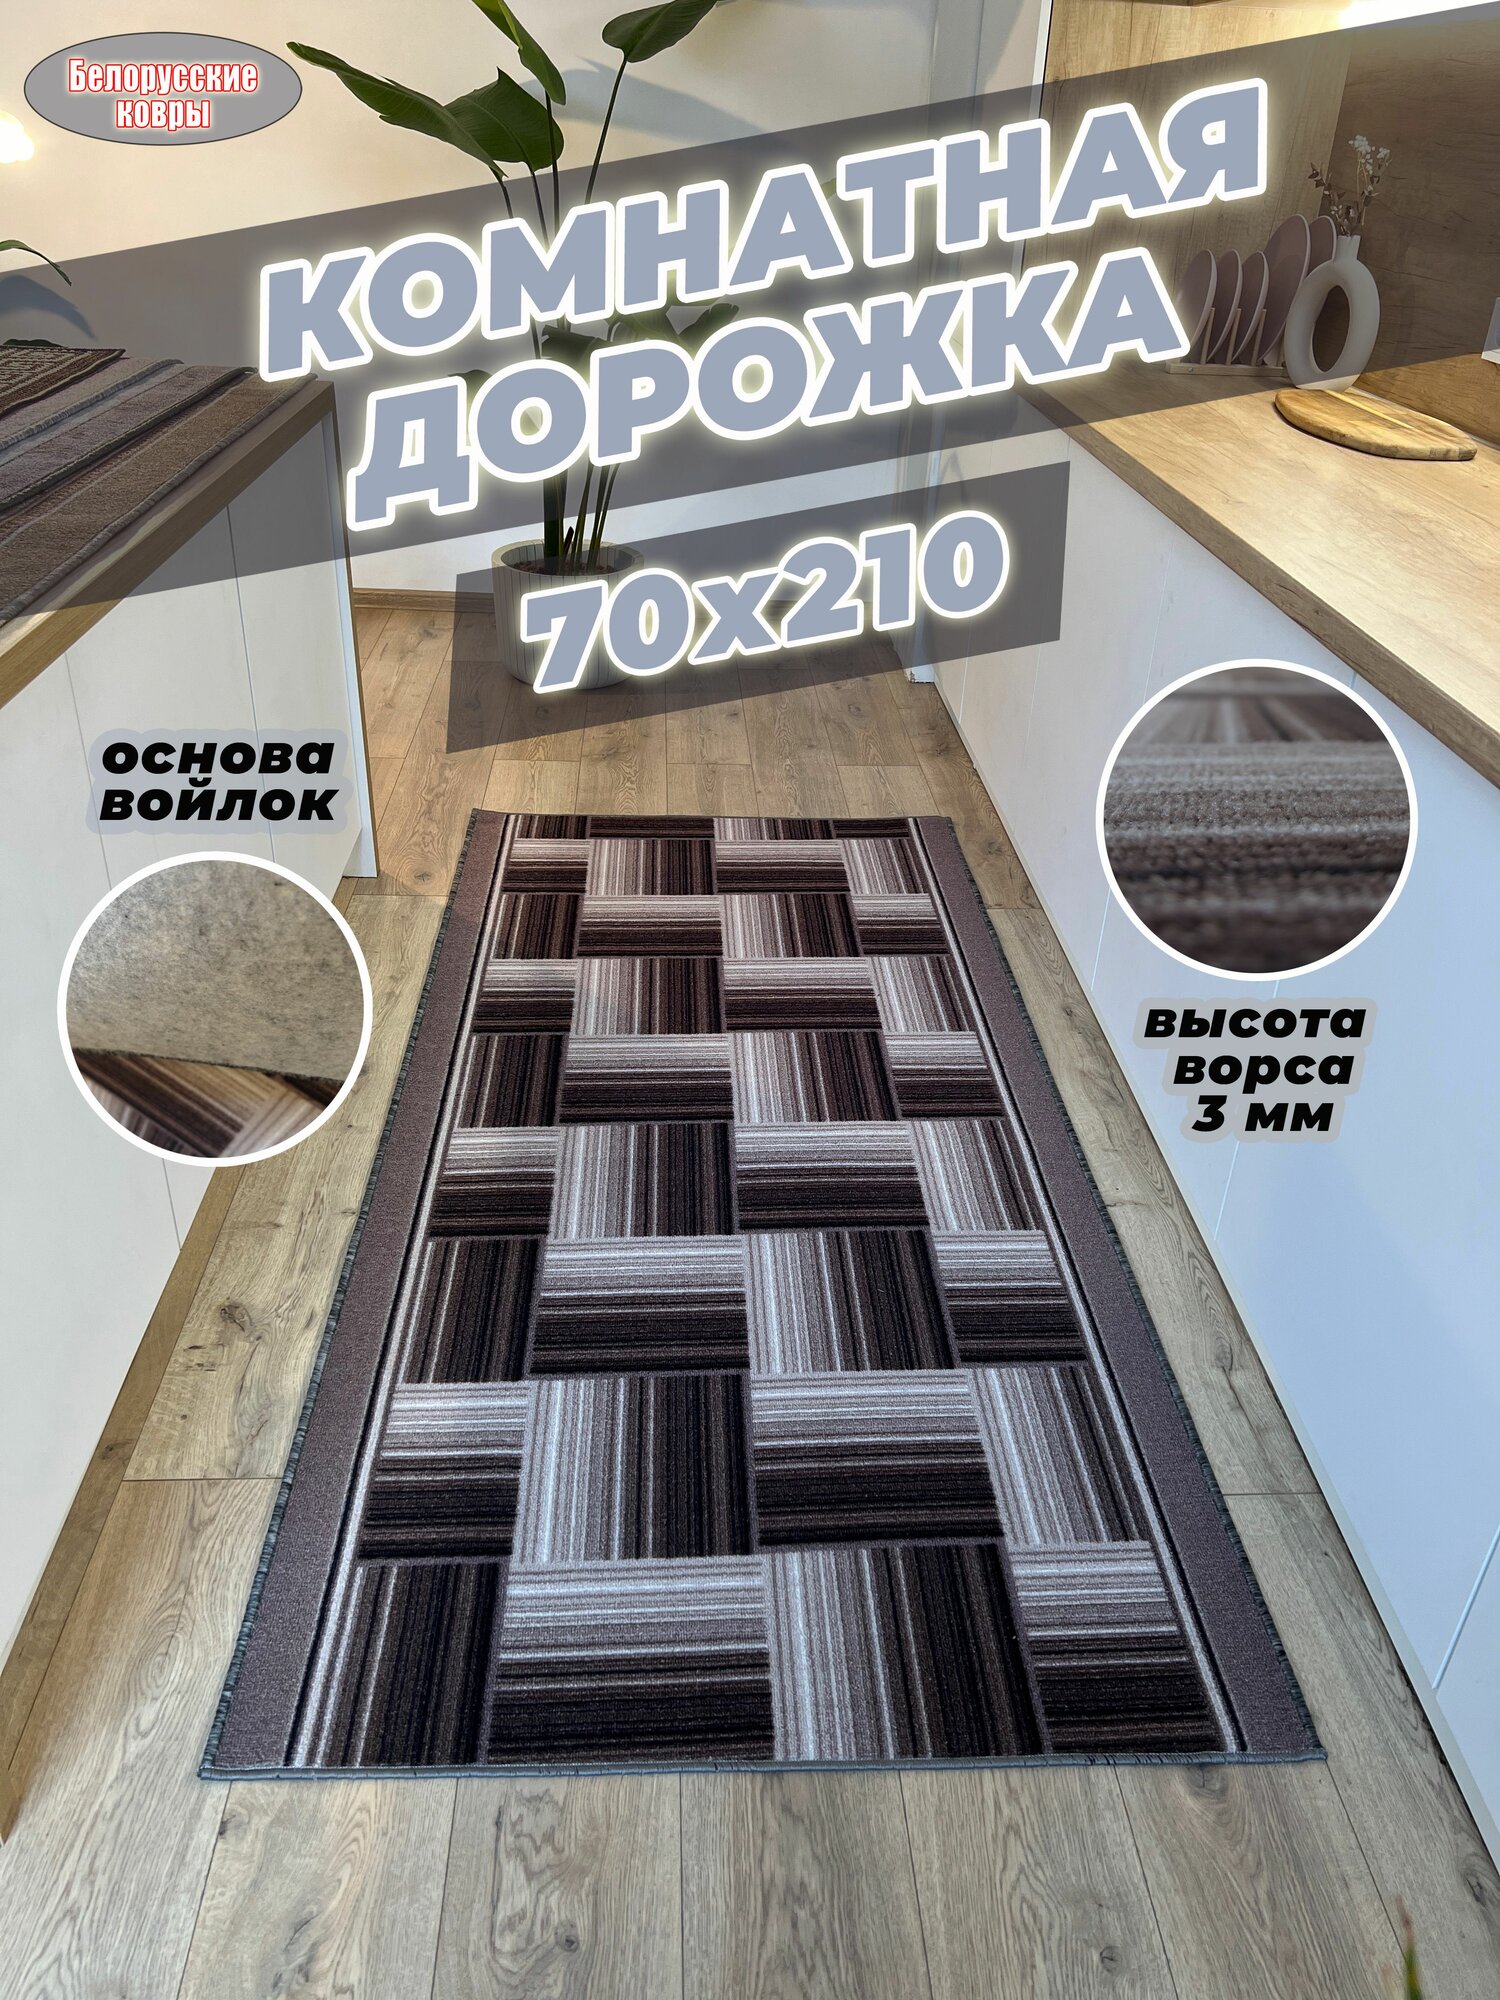 Белорусские ковры, ковровая дорожка 70х210см./0,7х2,1м.